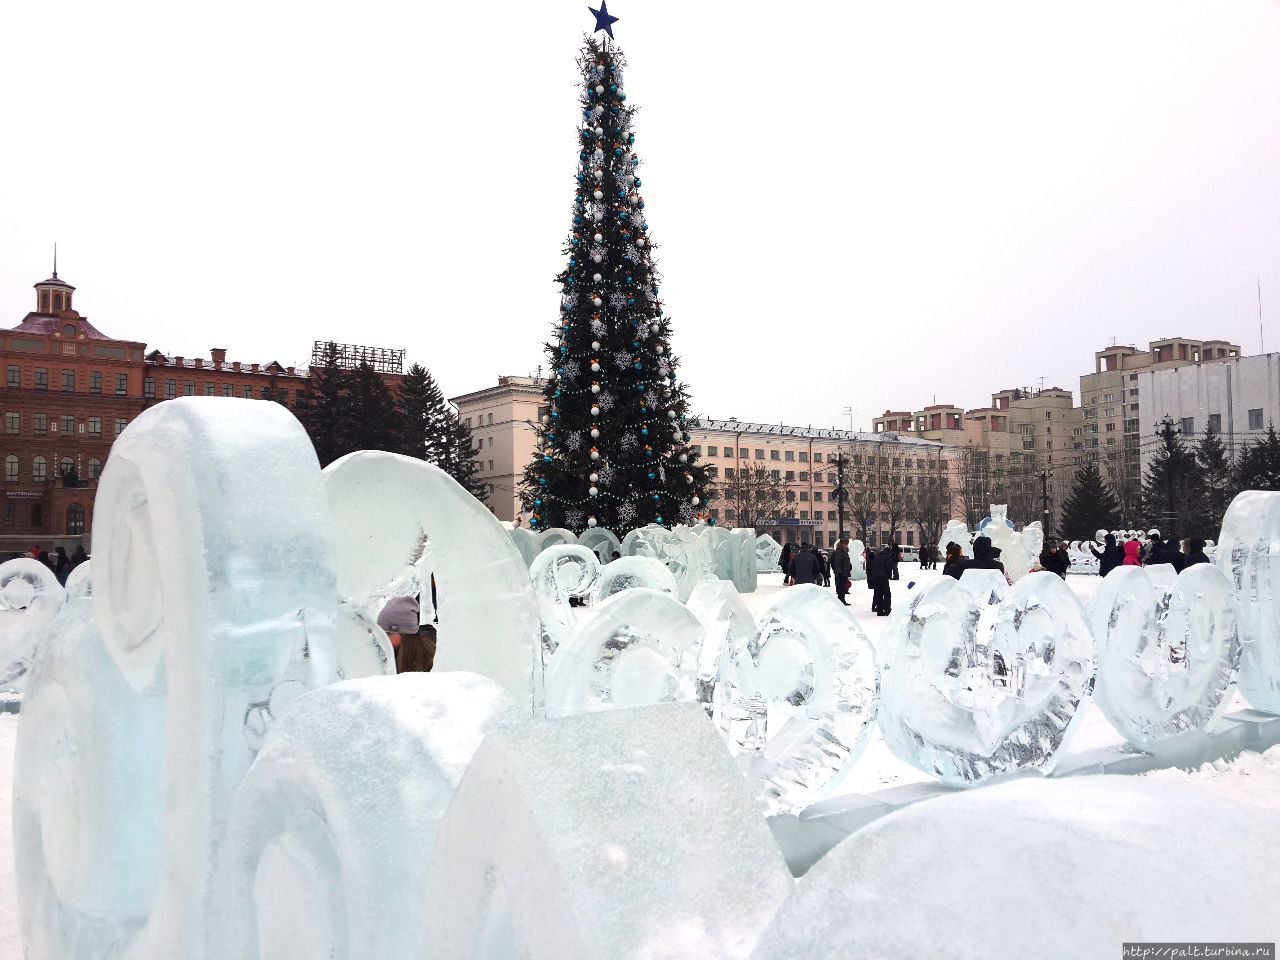 В рейтинге ледяного убранства главная площадь  Хабаровска — площадь Ленина — по мнению хабаровчан занимает последнее место Хабаровск, Россия